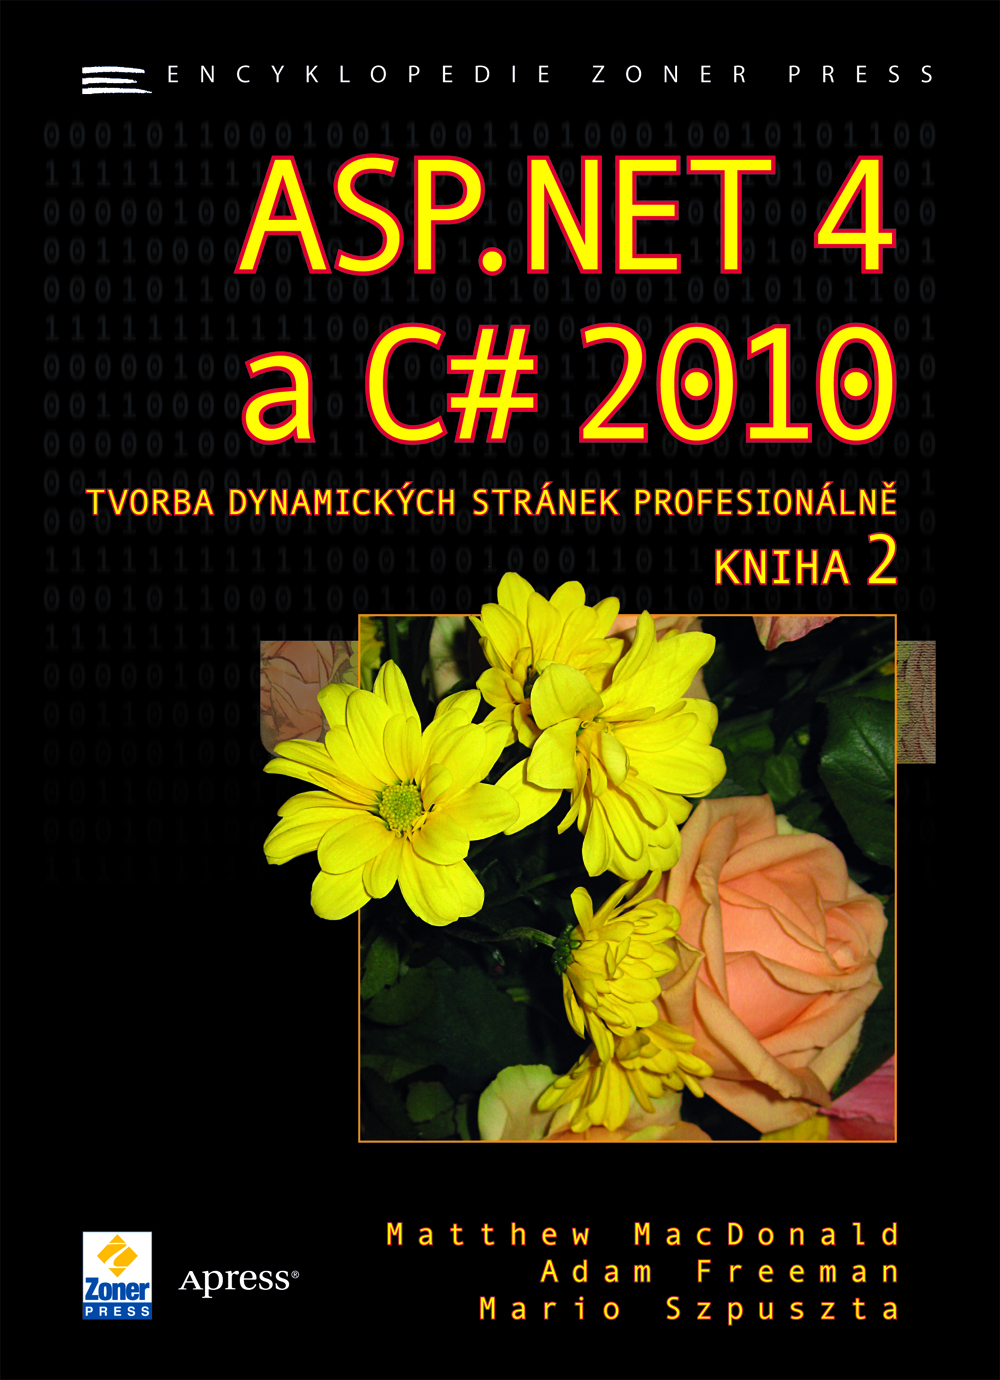 Matthew MacDonald, Adam Freeman a Mario Szpuszta – ASP.NET 4 a C# 2010 - KNIHA 2 - tvorba dynamických stránek profesionálně